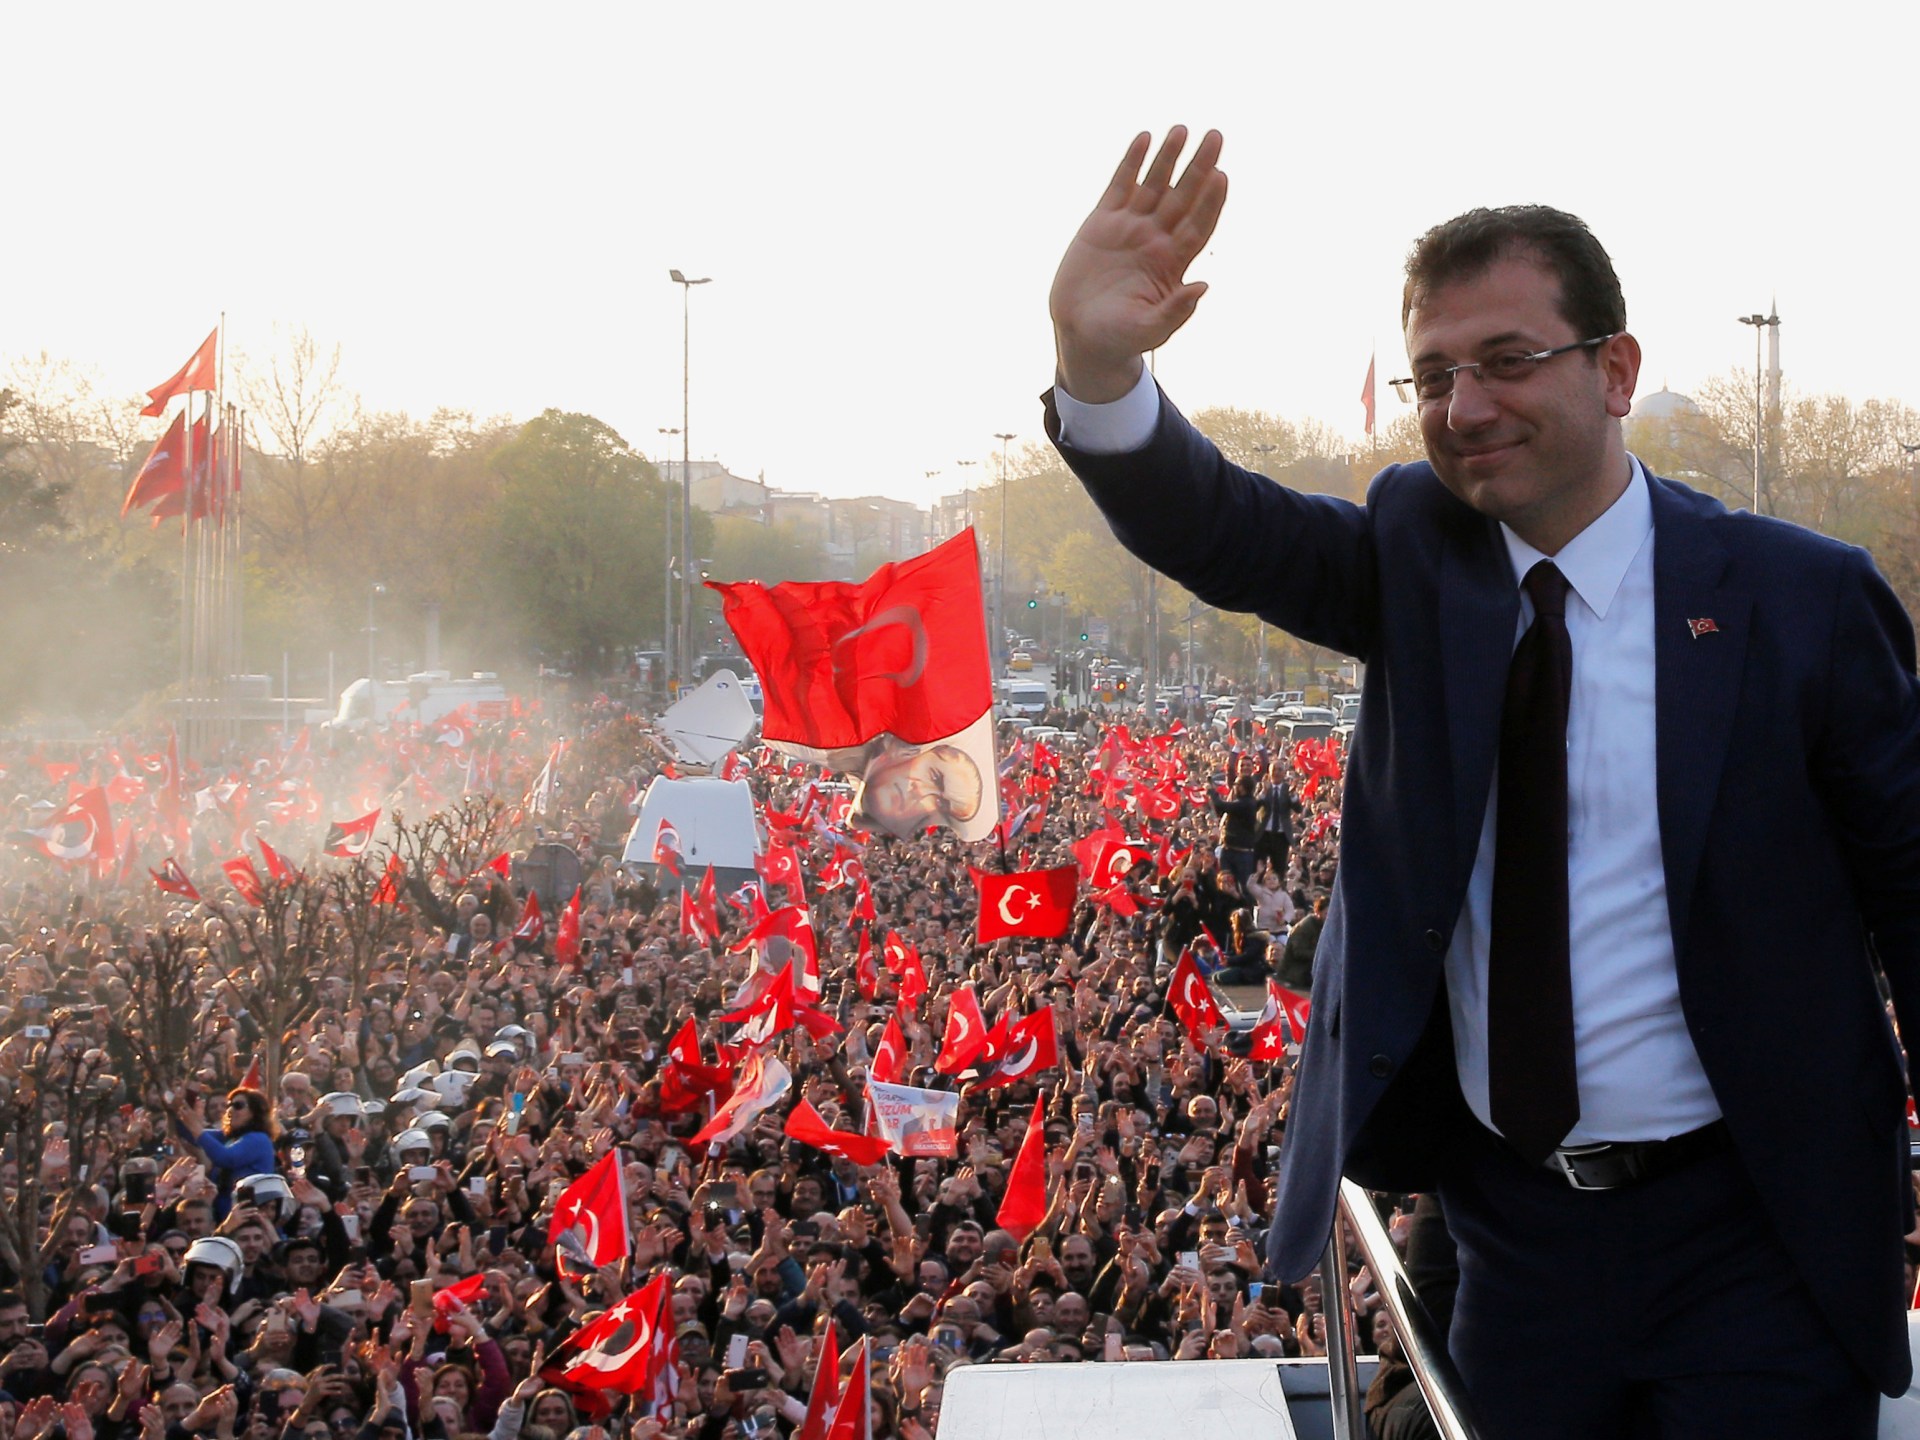 “التصويت العقابي”.. لماذا خسر العدالة والتنمية الانتخابات في تركيا؟ | سياسة – البوكس نيوز